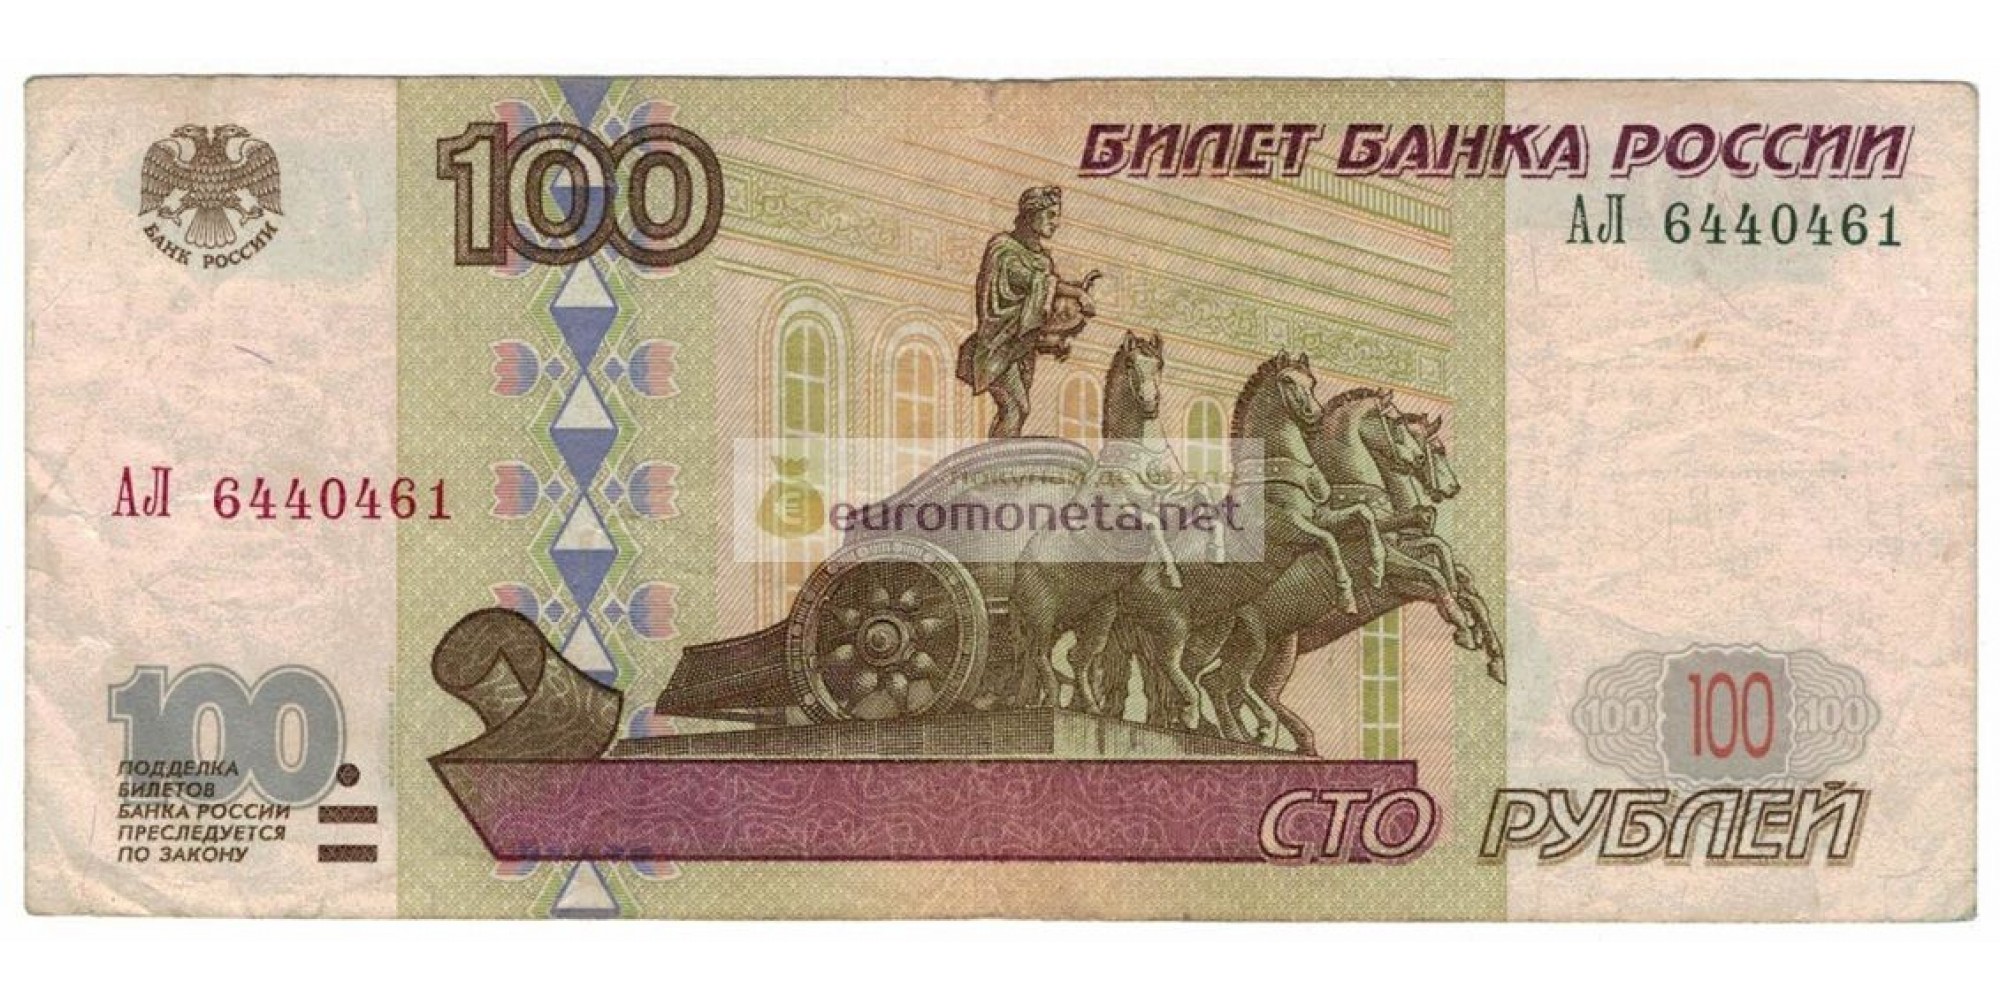 Россия 100 рублей 1997 год модификация 2001 год редкая серия АЛ 6440461